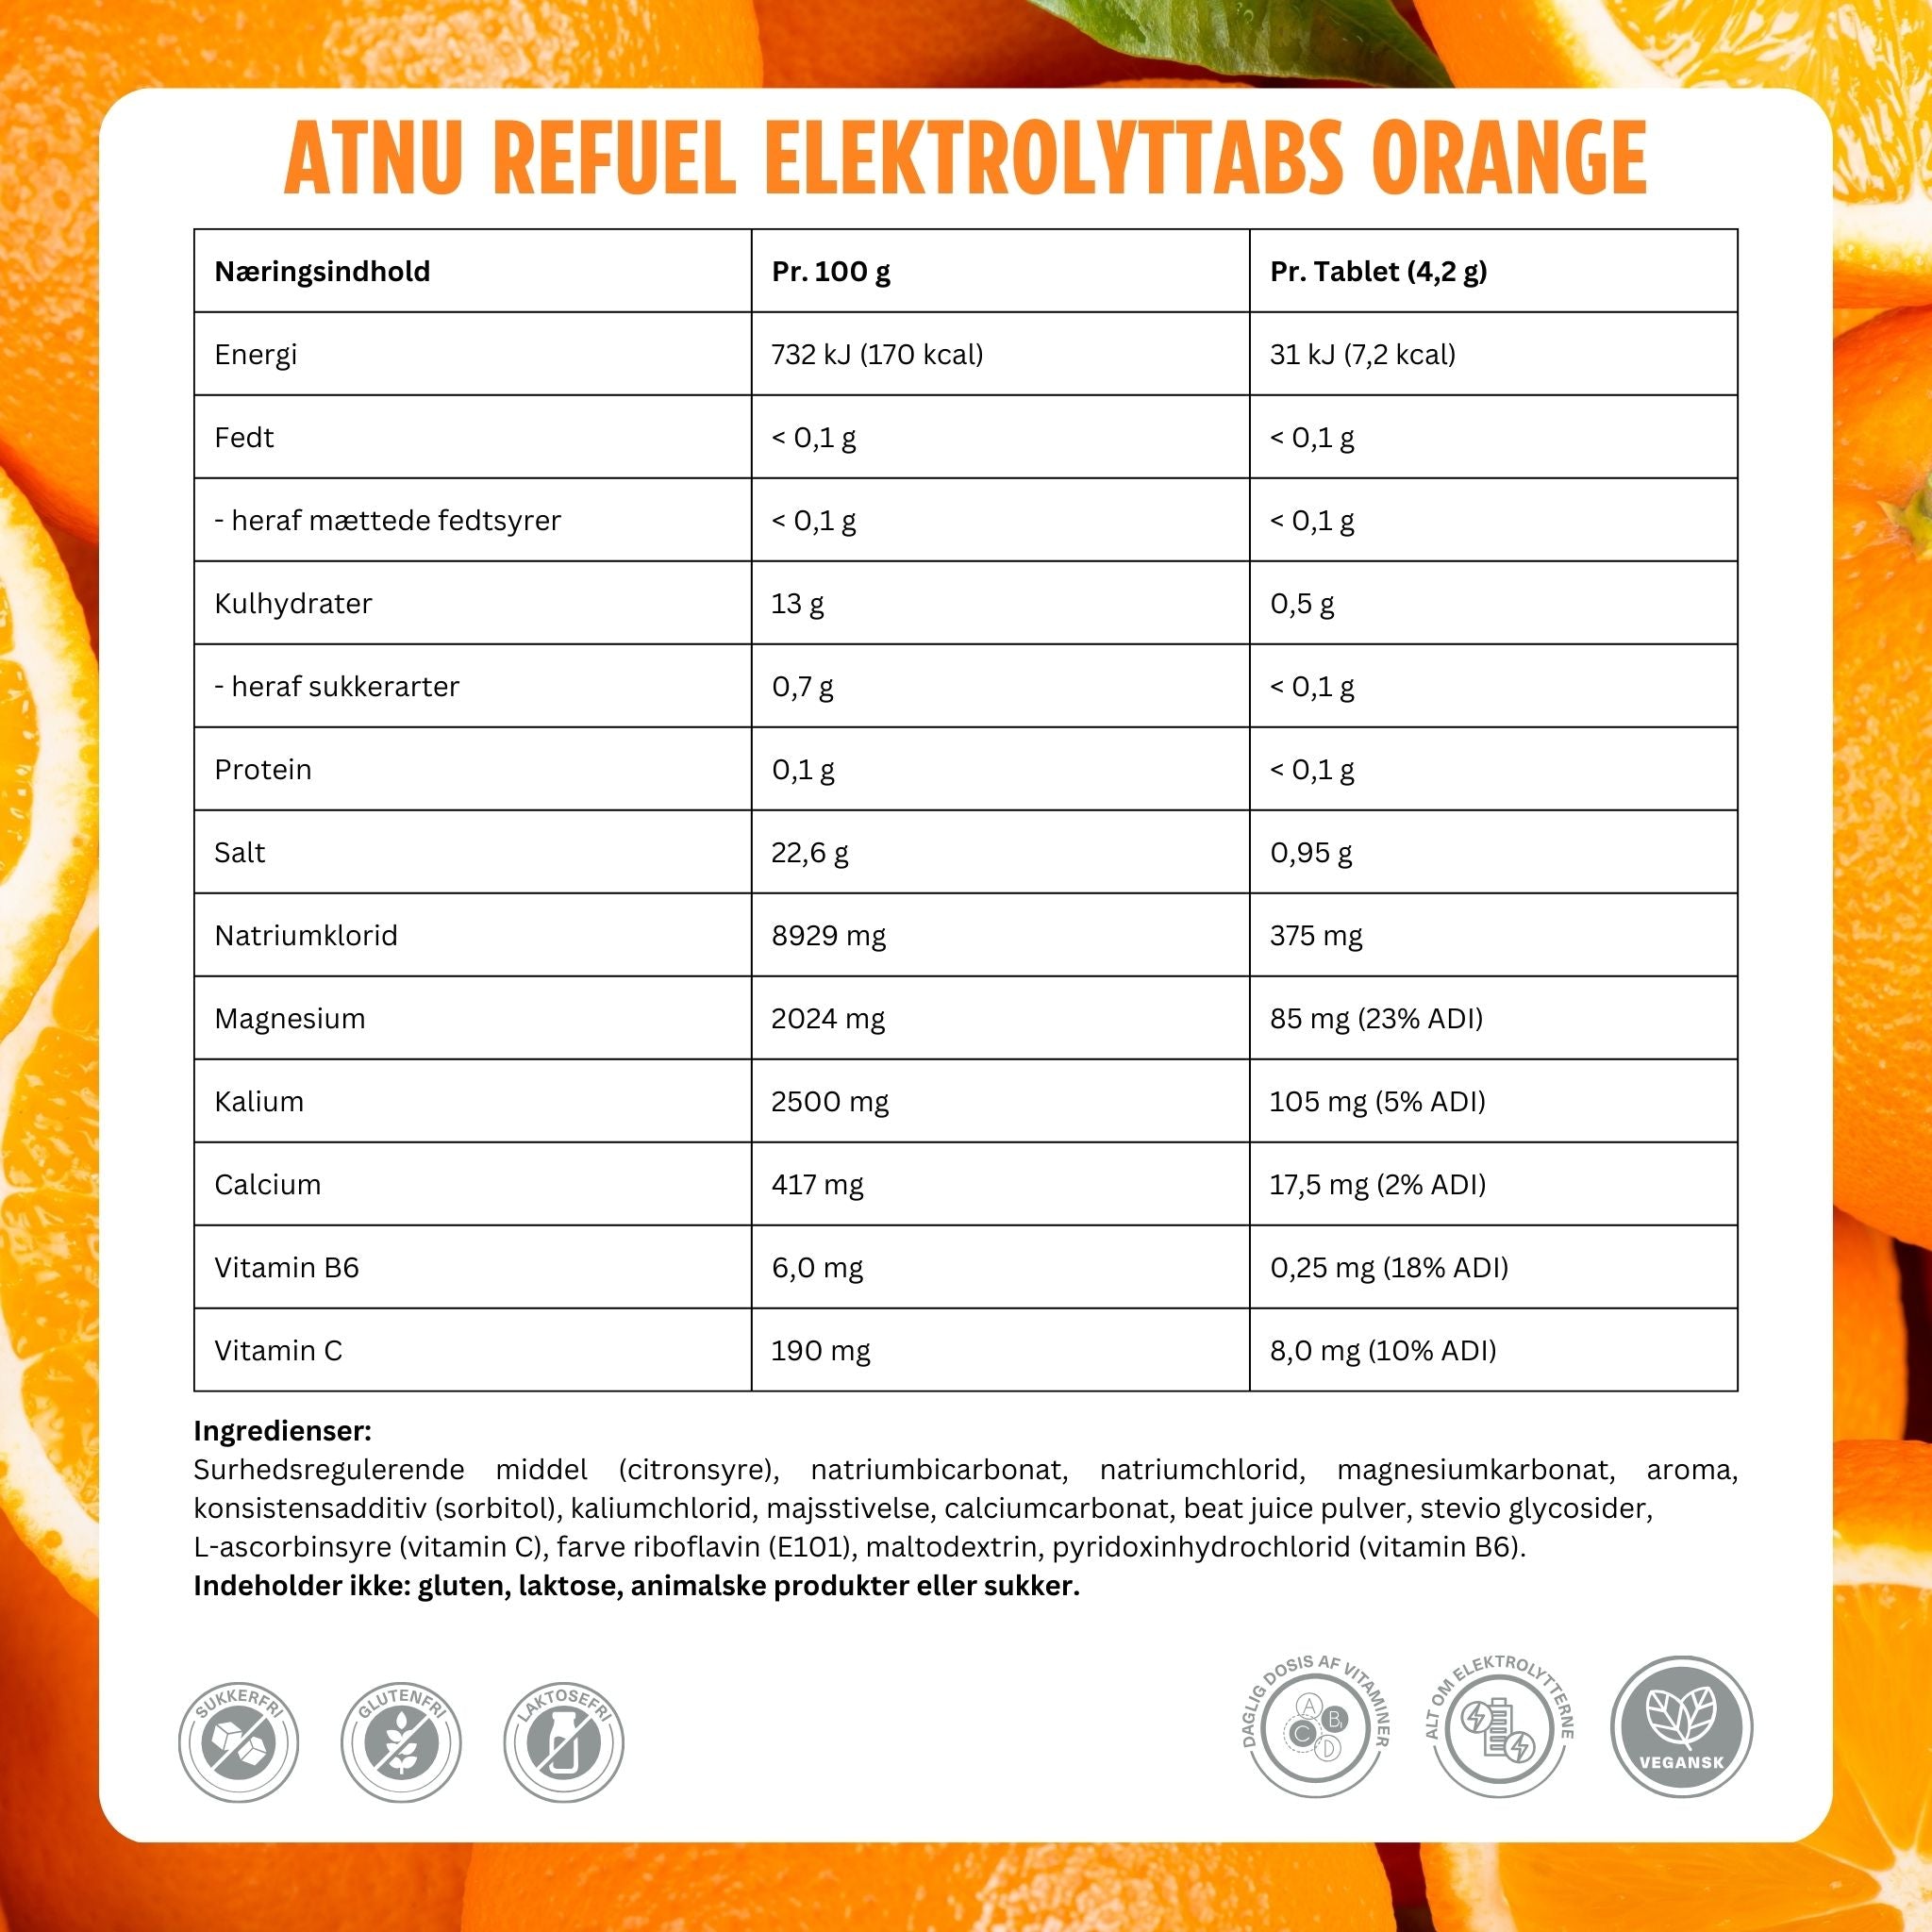 ATNU Refuel Elektrolyttabs Orange (20 tabs)